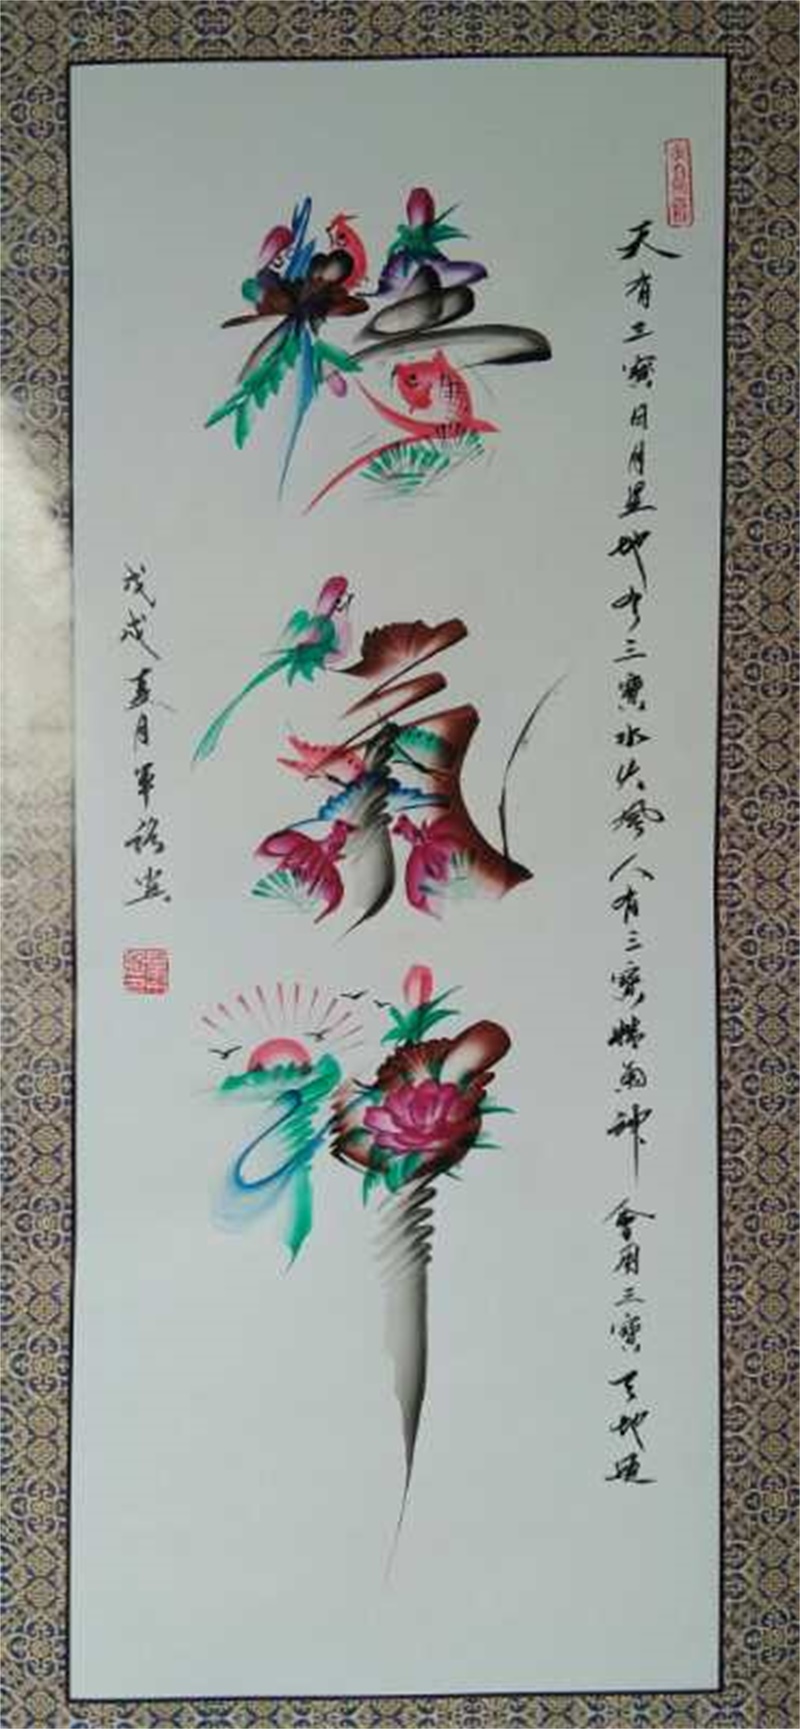 守艺匠人 自幼酷爱书法,绘画等,尤其对中国民间艺术花鸟字情有独钟,为